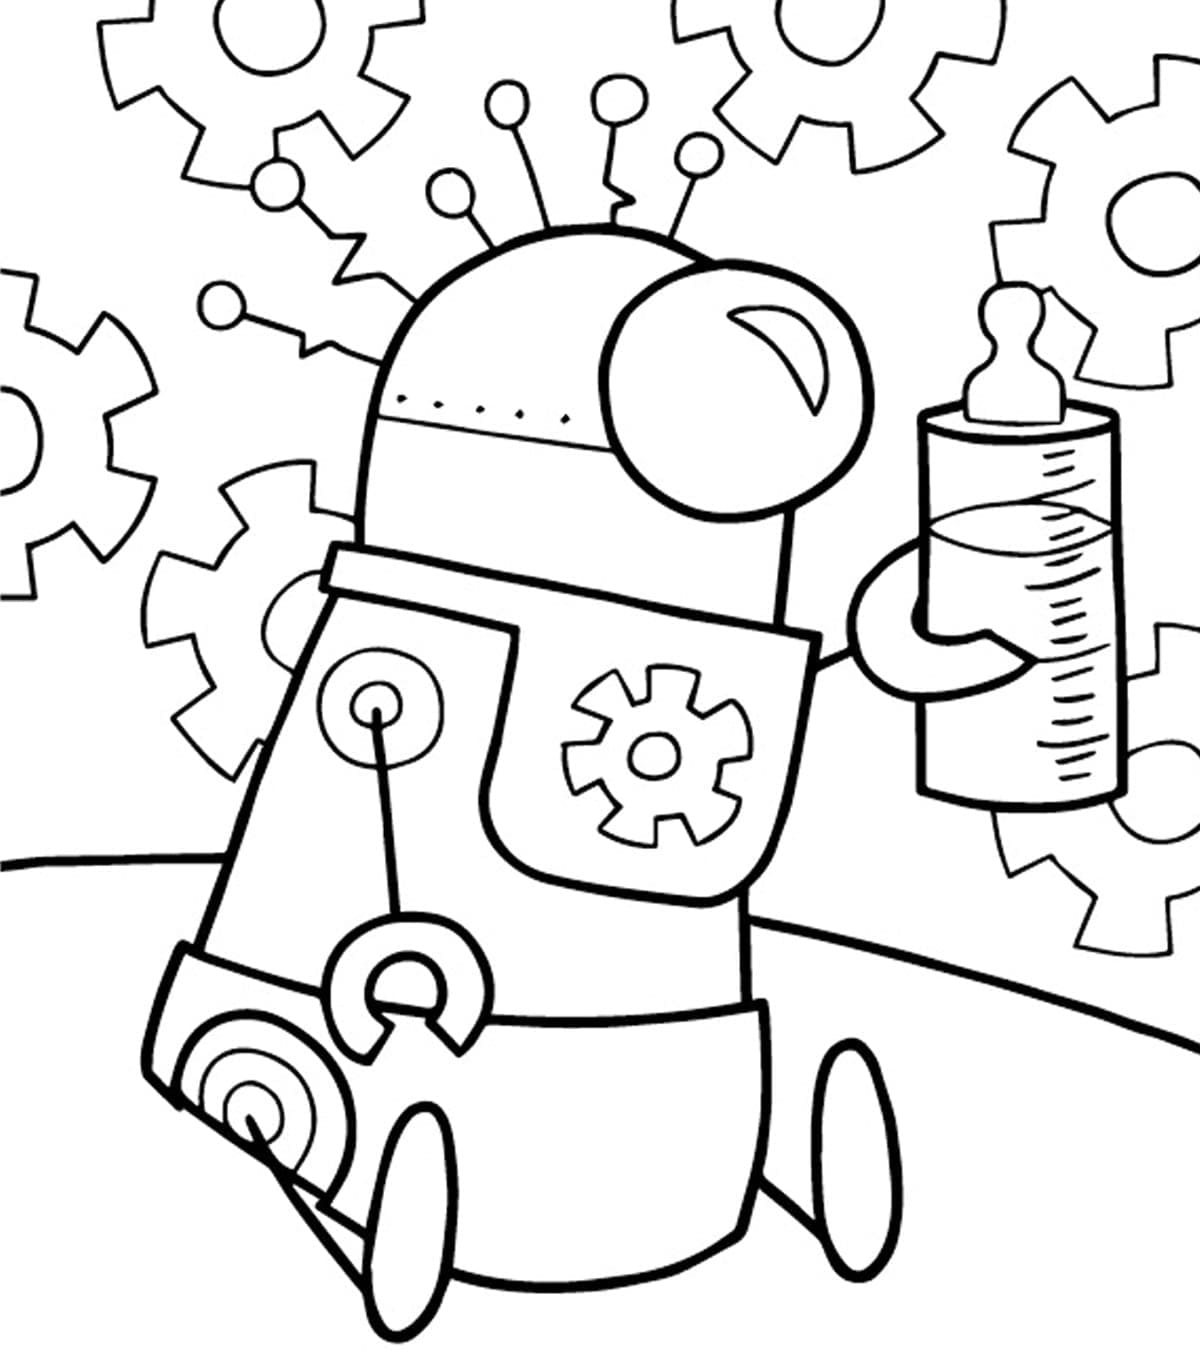 Bébé Robot coloring page